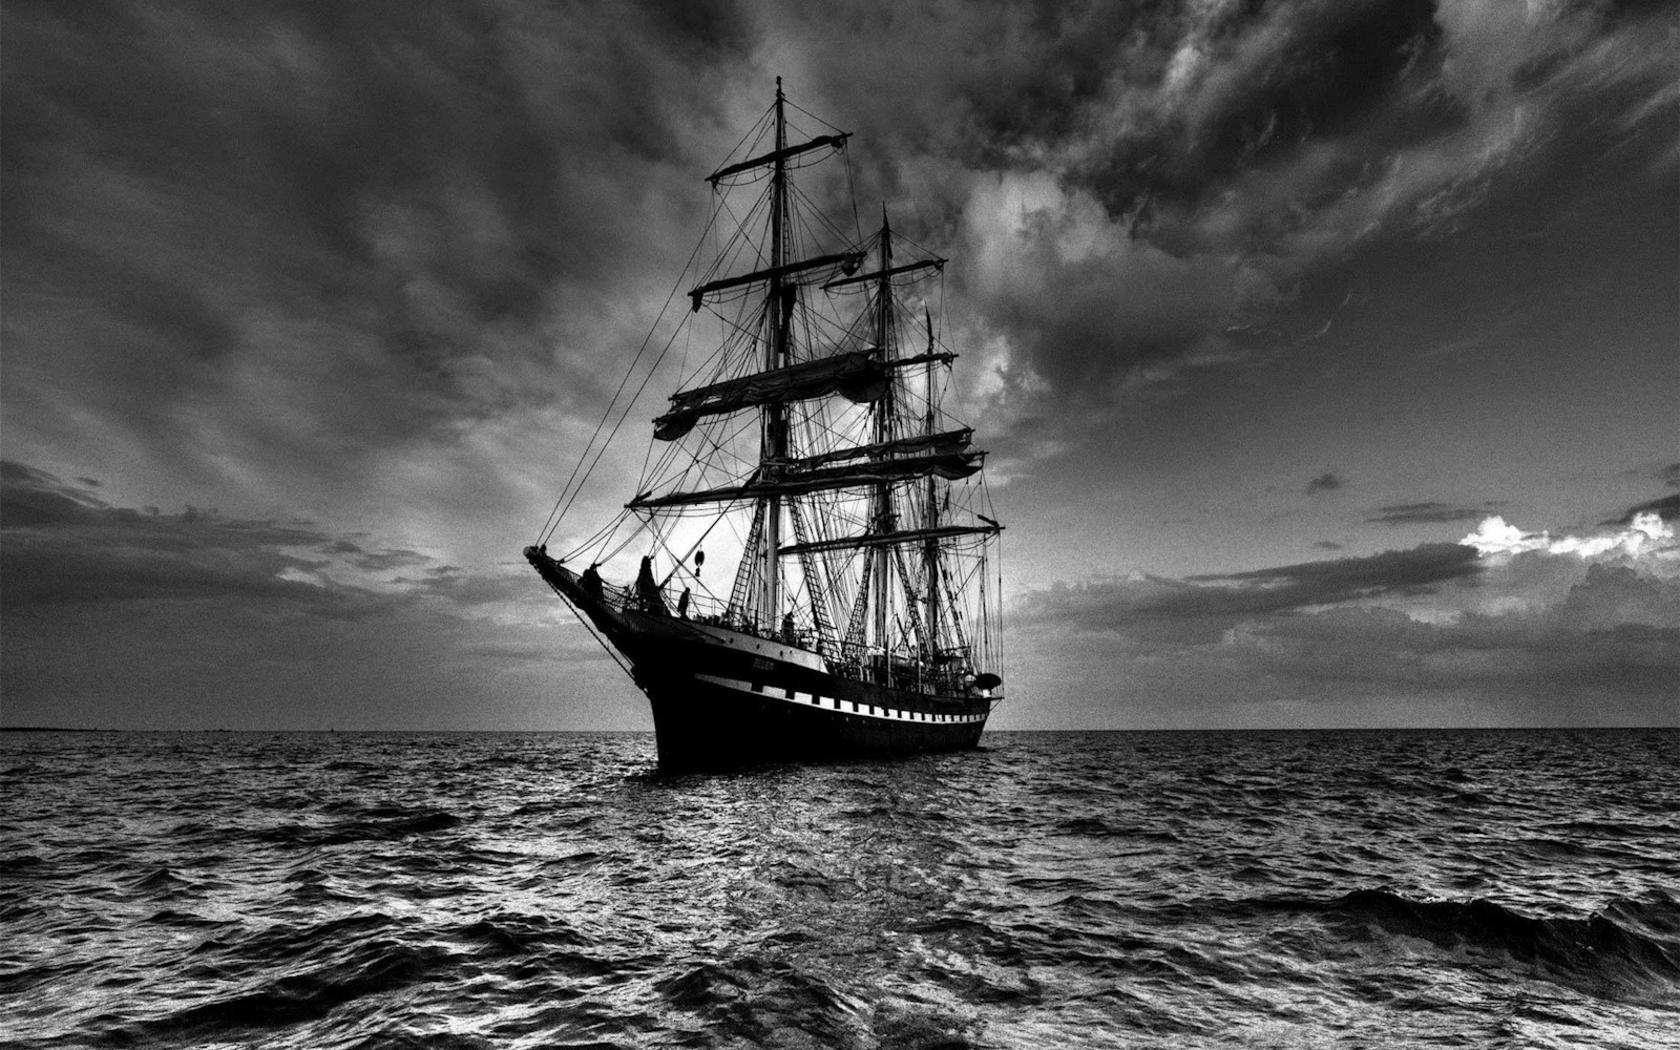 Dark-Wallpaper-Boat-Image-Sailing-Picture.jpg